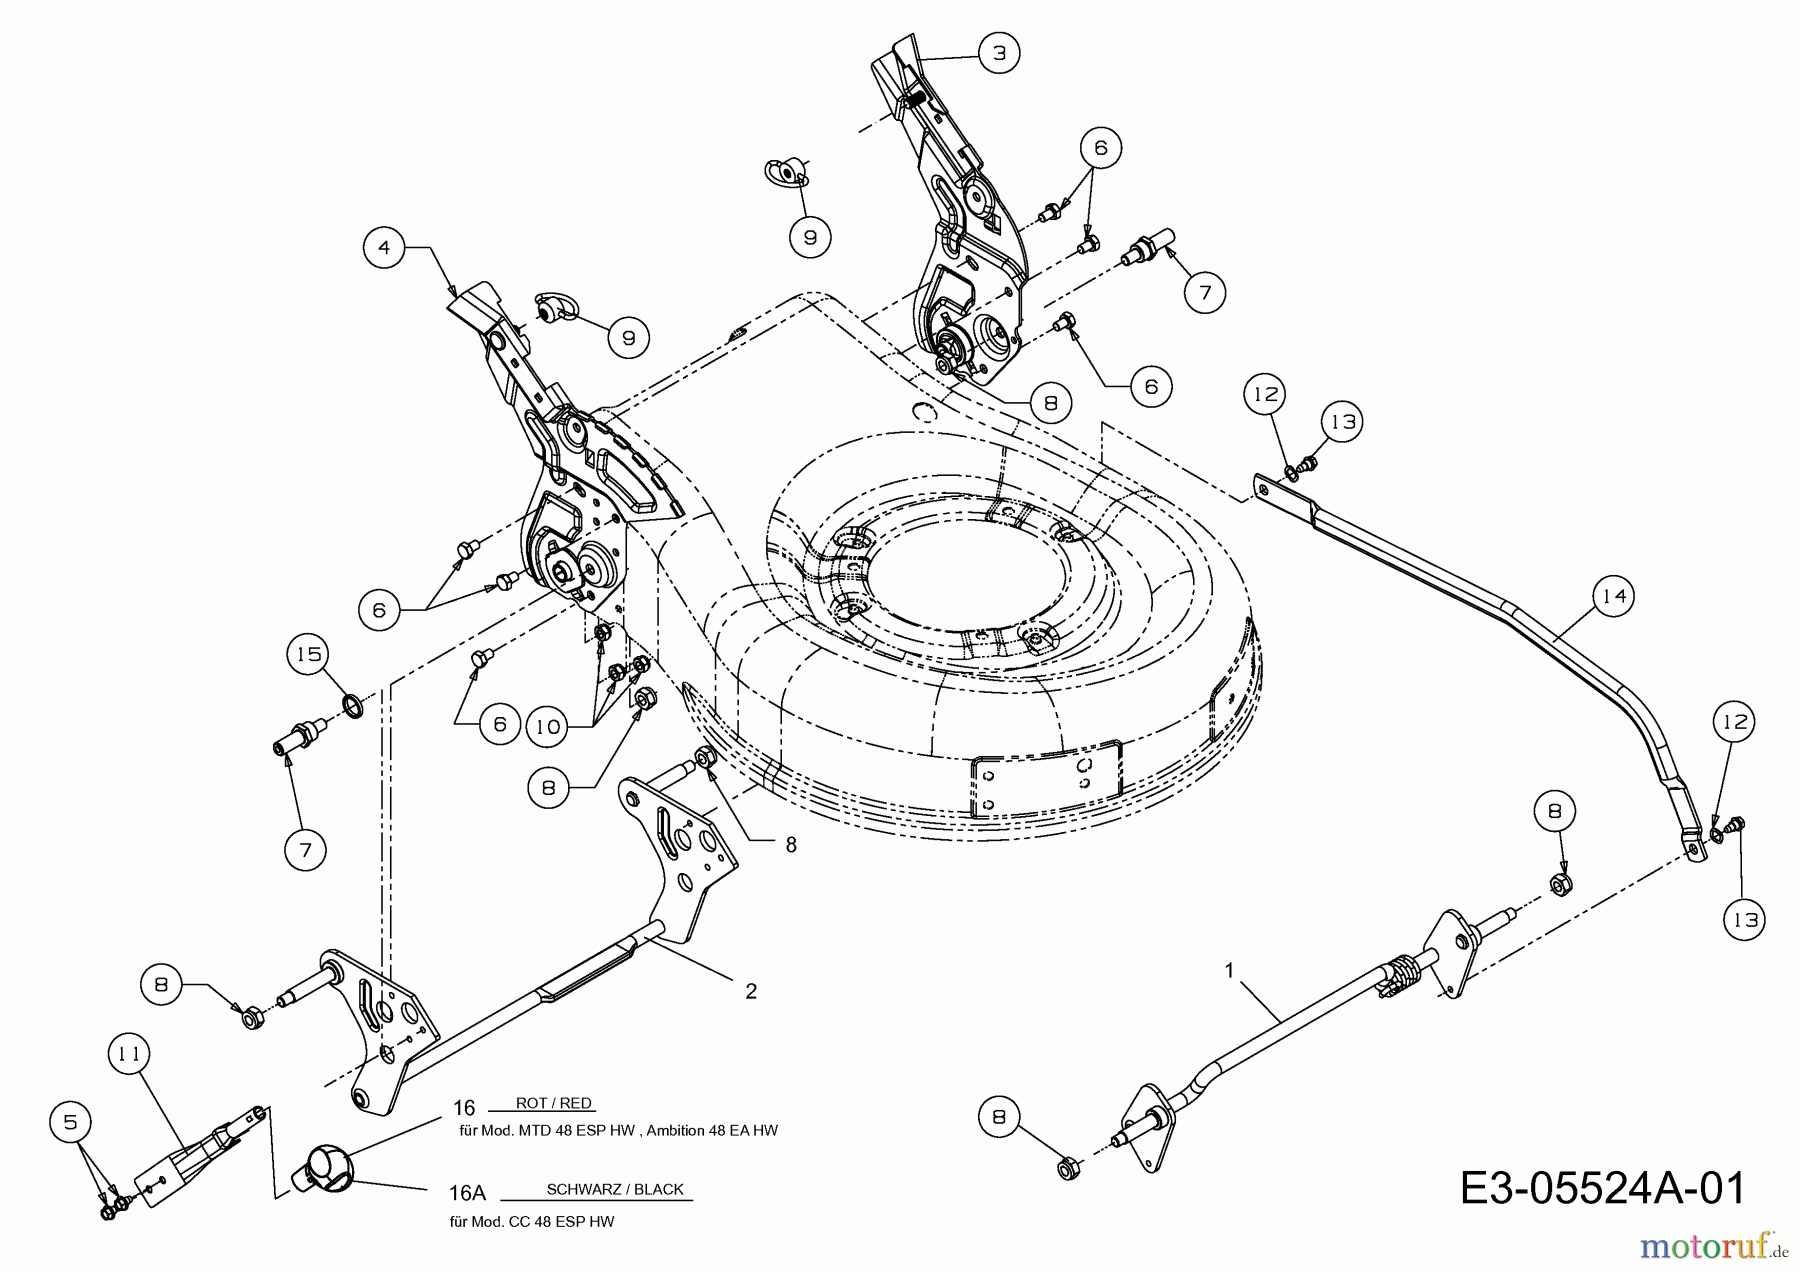  Lux Tools Motormäher mit Antrieb B 48 HMAECO 12A-129L694  (2014) Schnitthöhenverstellung